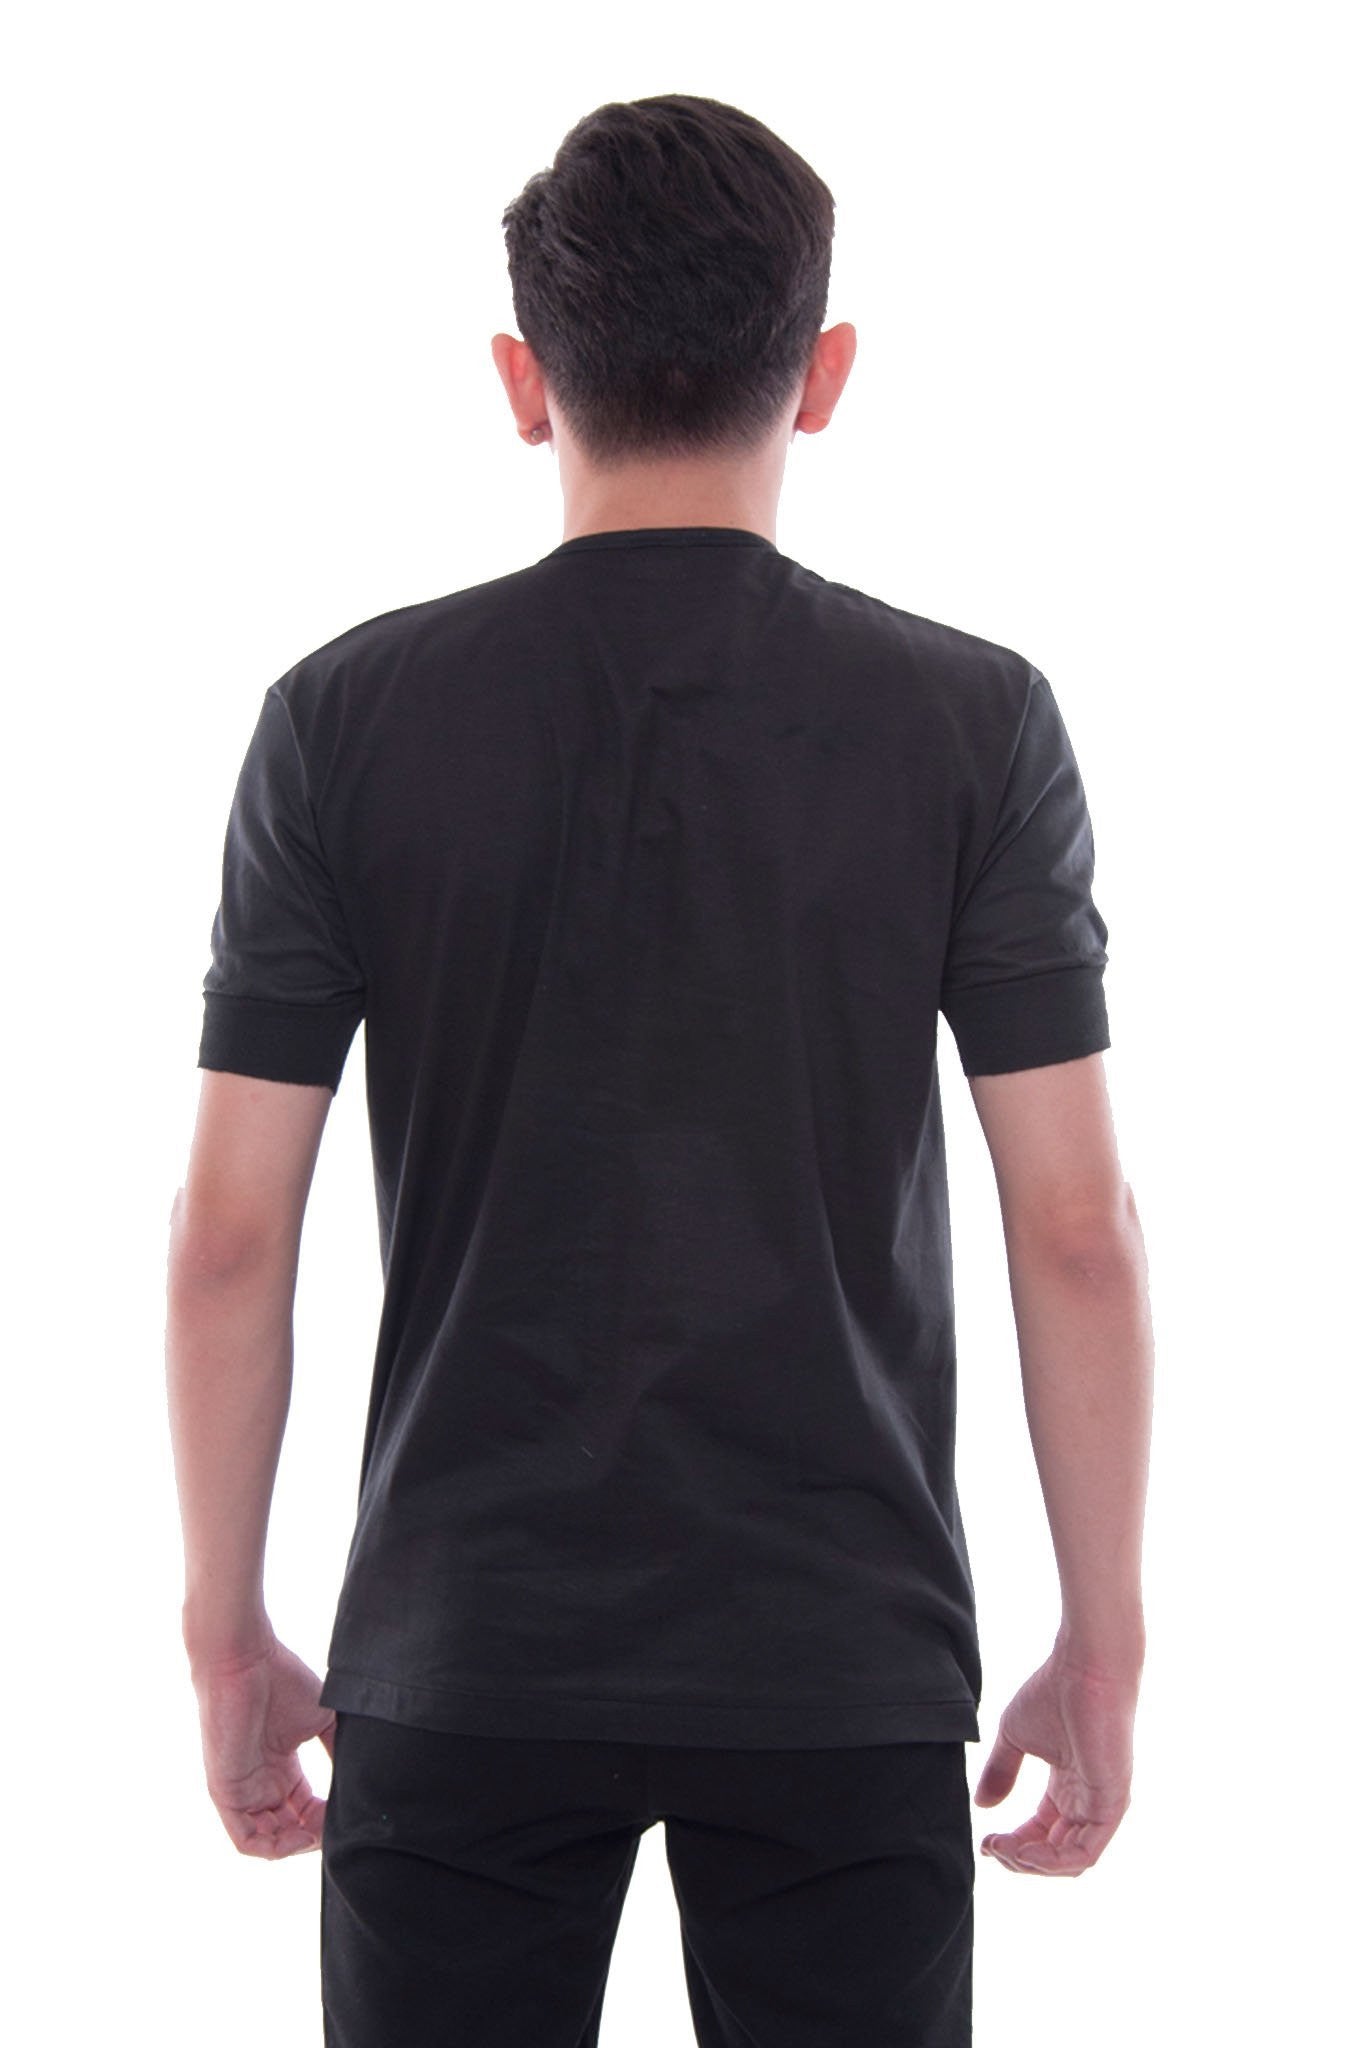 BARONG WAREHOUSE - MUS8 - Camisa de Chino - Short-Sleeve - Black